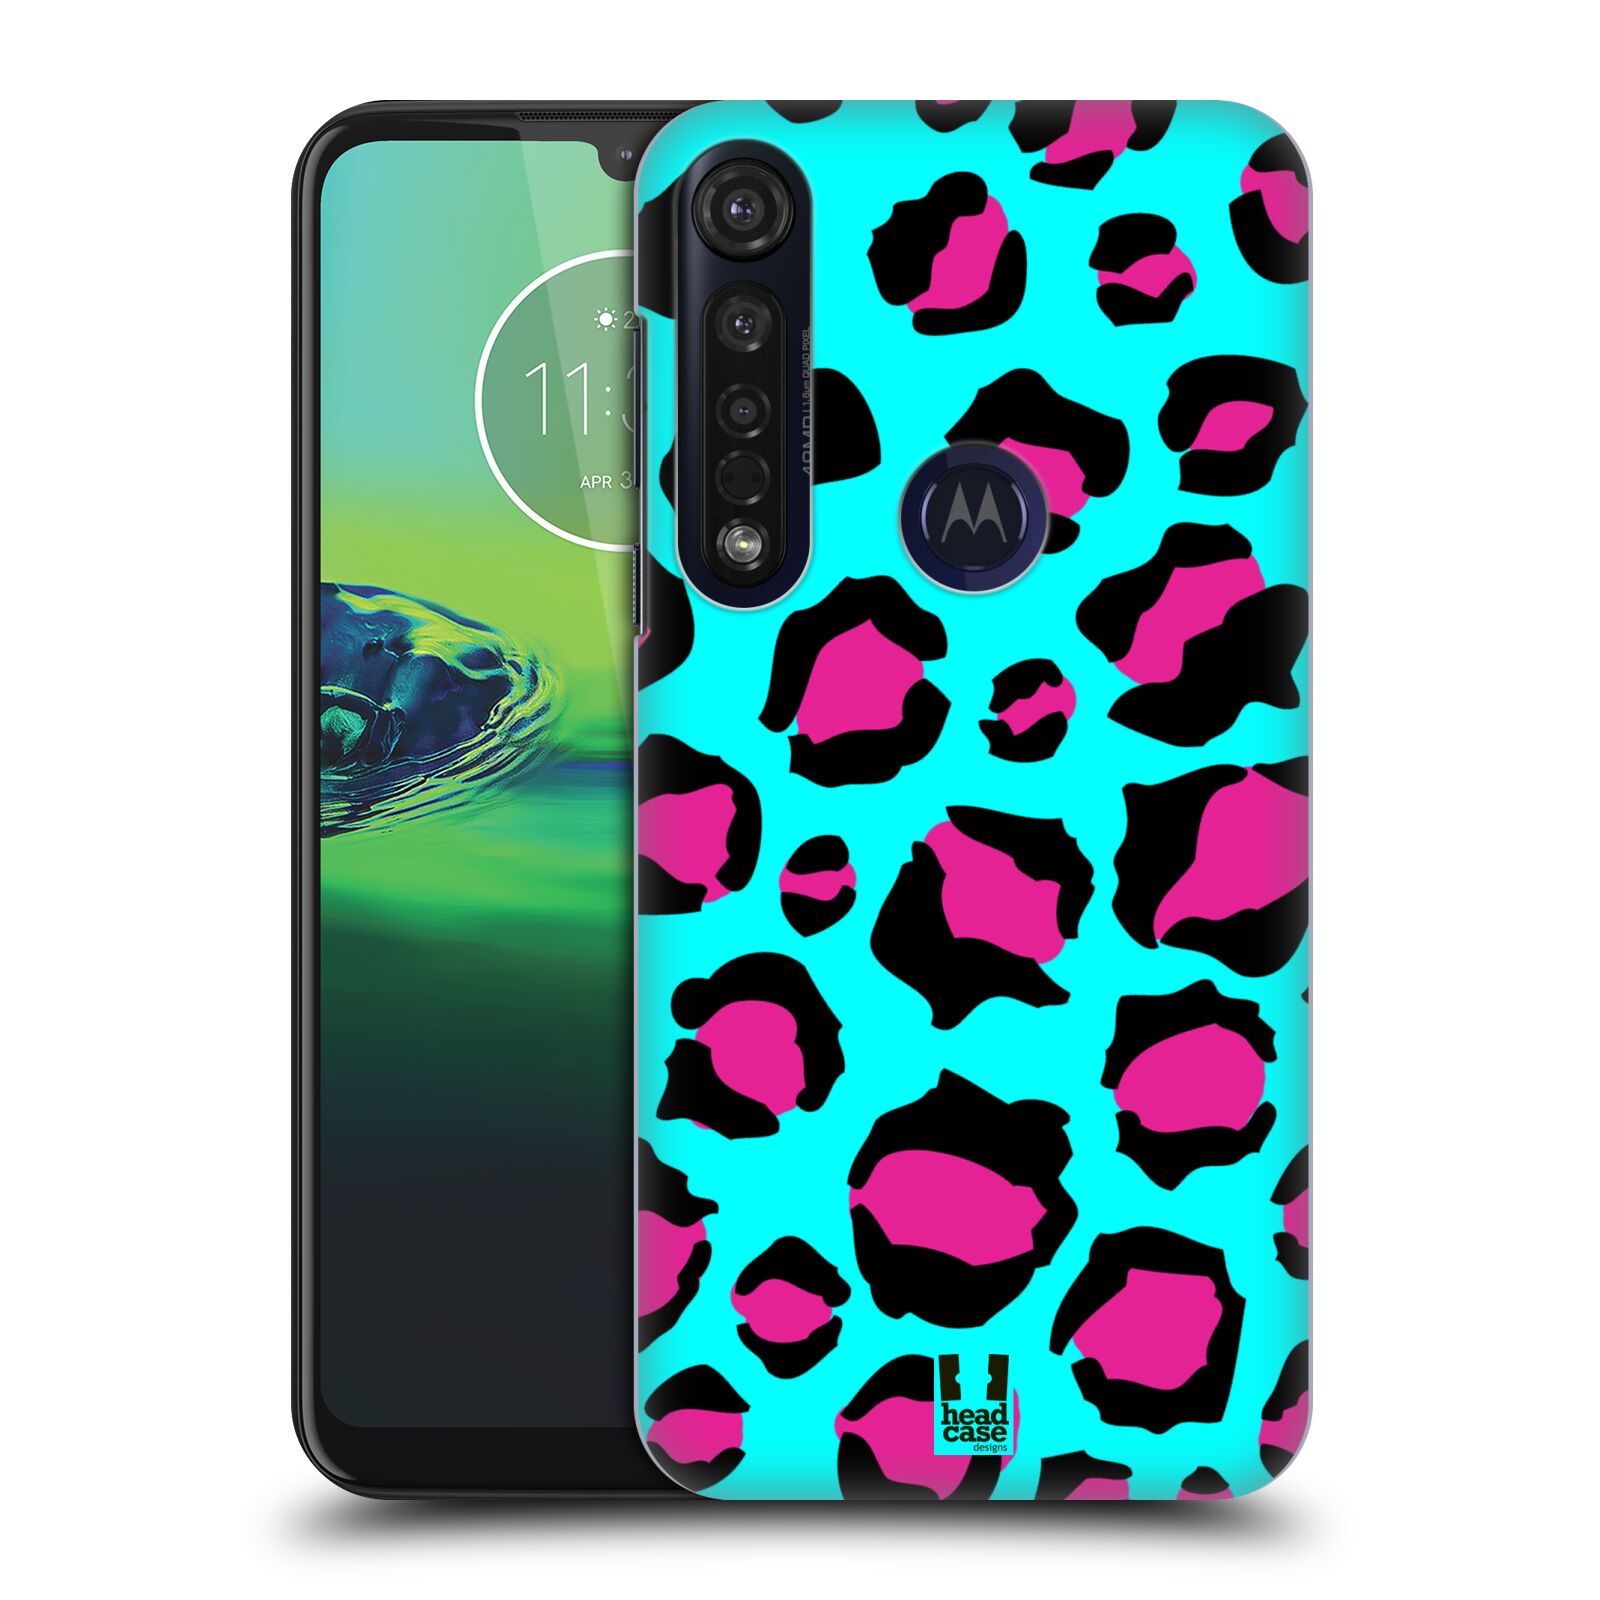 Pouzdro na mobil Motorola Moto G8 PLUS - HEAD CASE - vzor Divočina zvíře tyrkysový leopard